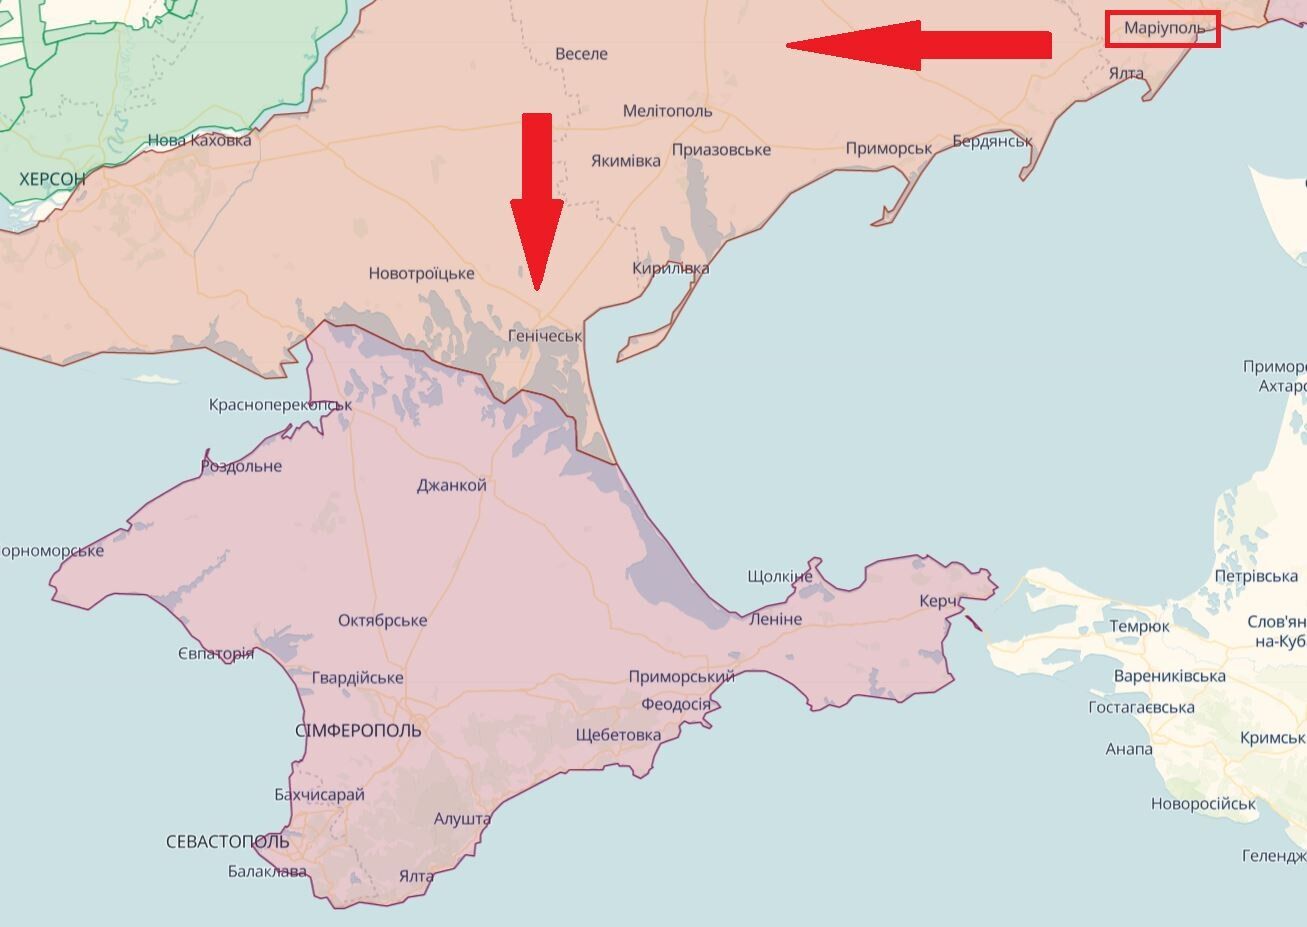 Ключевым будет возвращение Крыма: Ходжес дал прогноз, какие территории могла бы освободить Украина благодаря западным танкам